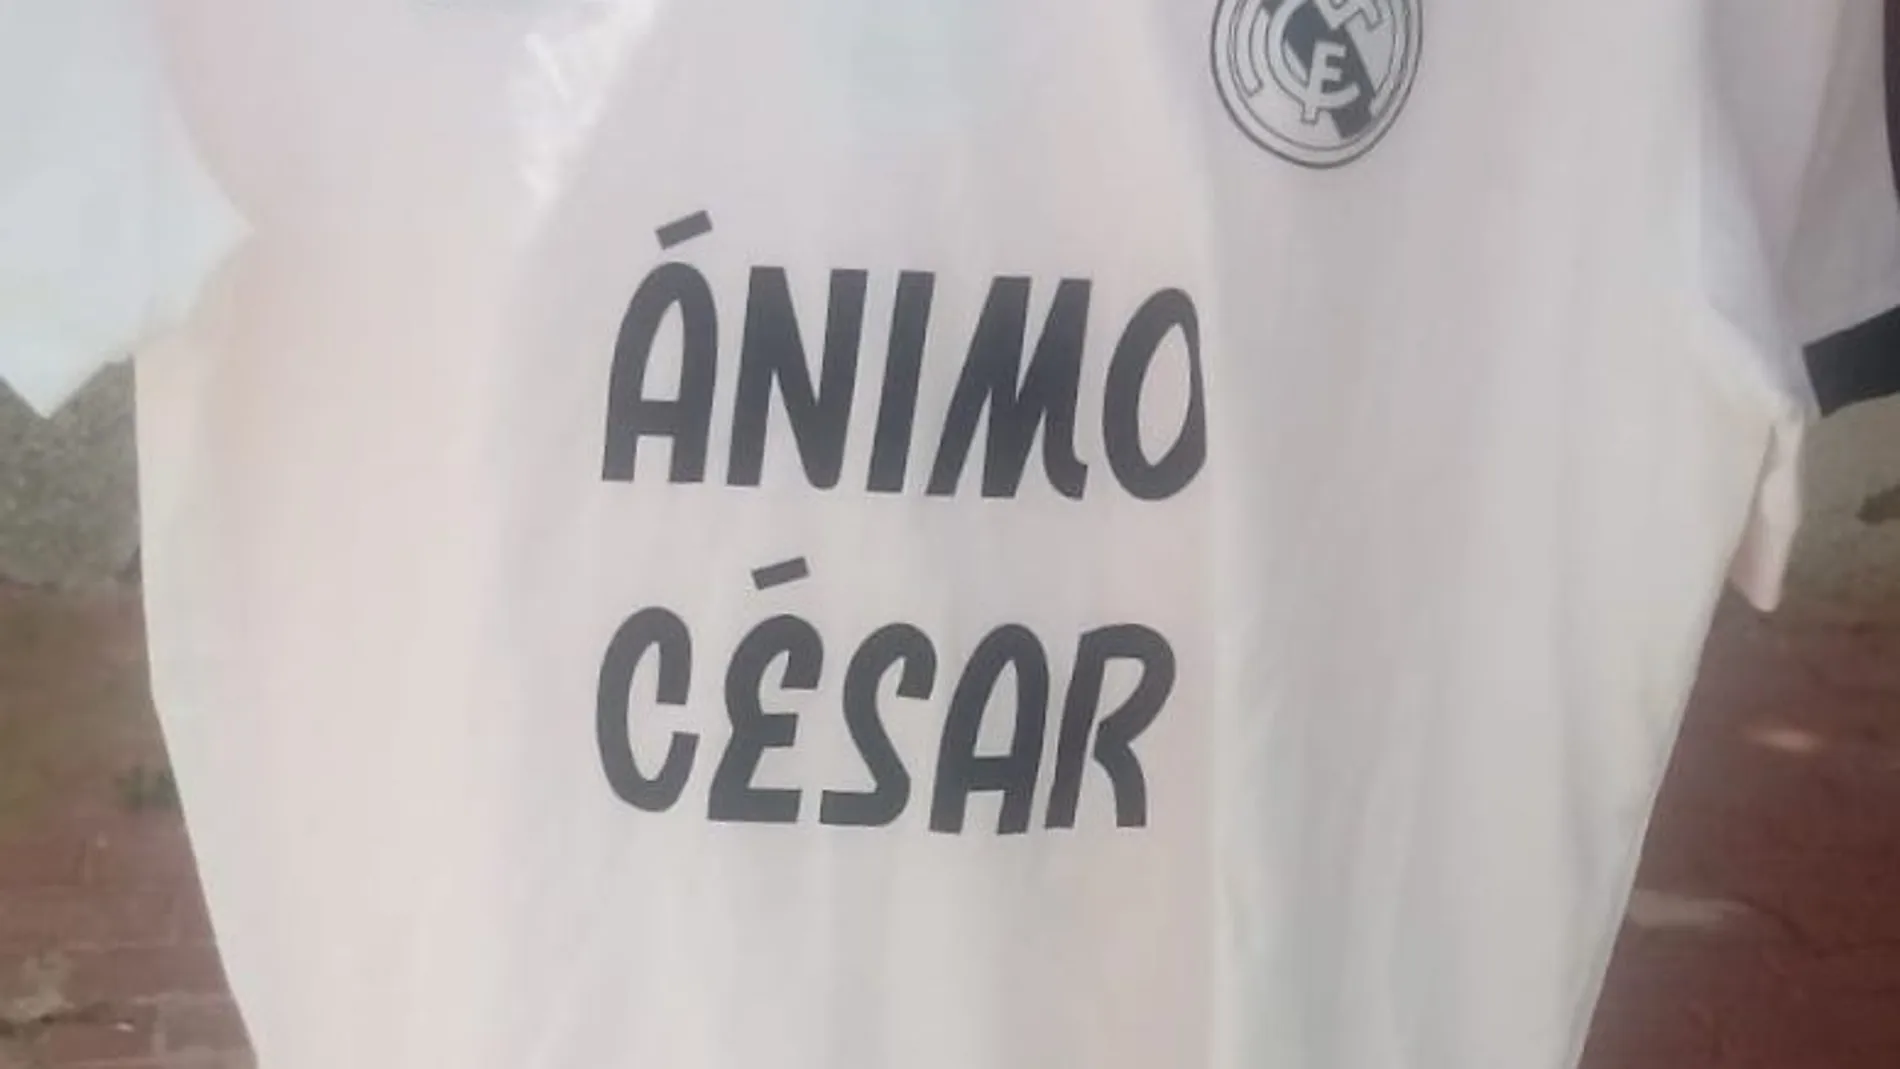 La camiseta de apoyo del Real Madrid a César Gelabert